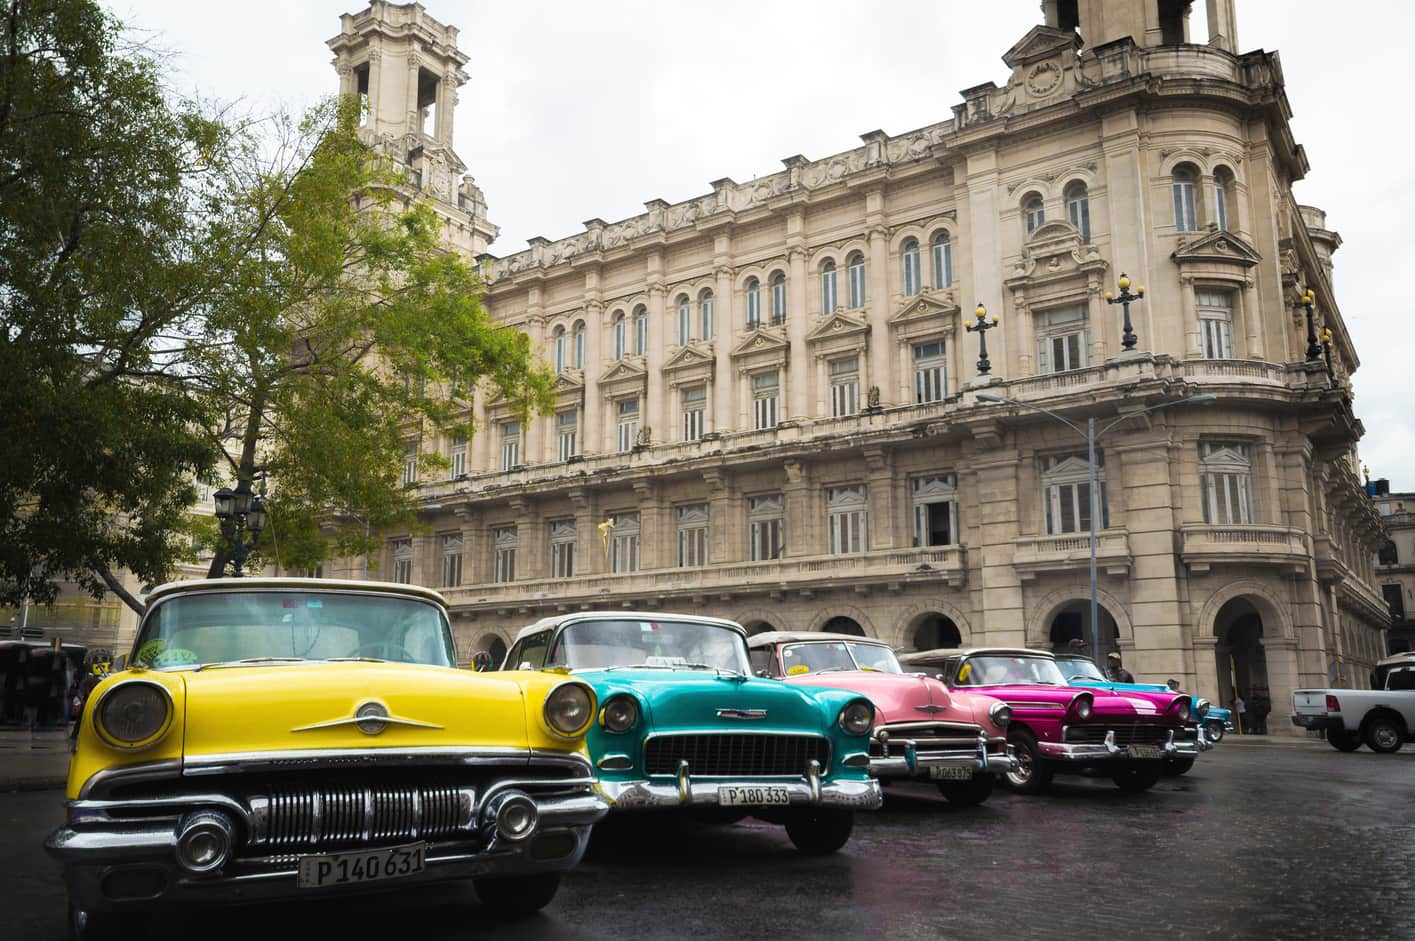 Paseo en coche clásico, que hacer en Cuba